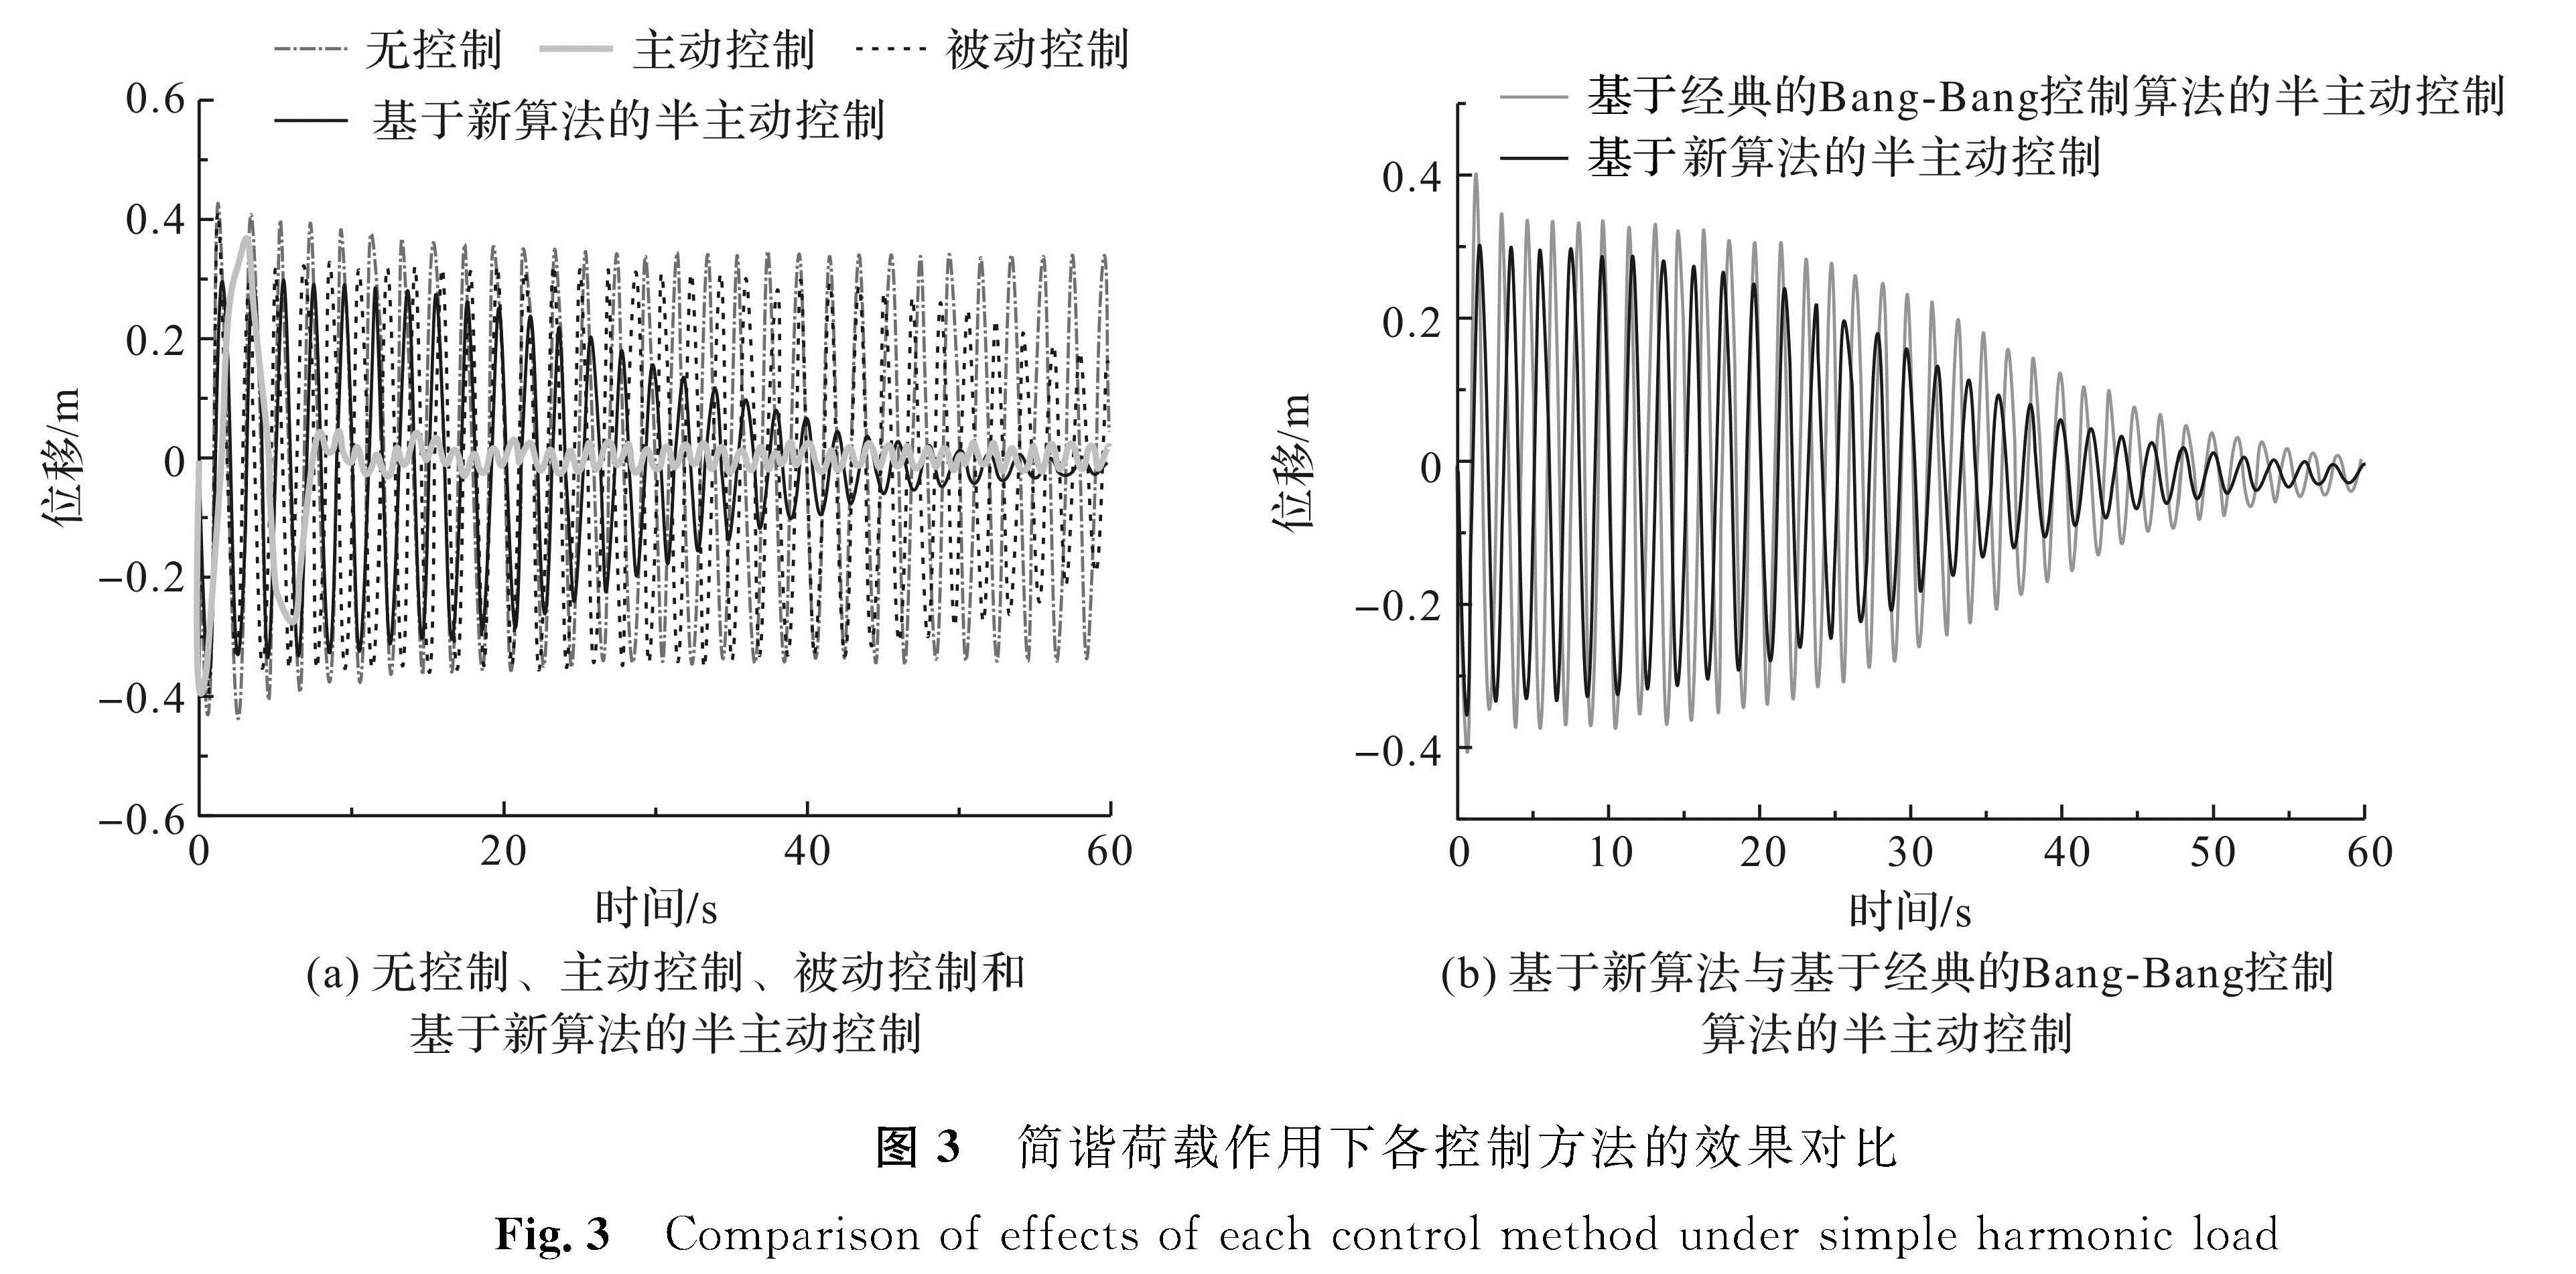 图3 简谐荷载作用下各控制方法的效果对比<br/>Fig.3 Comparison of effects of each control method under simple harmonic load